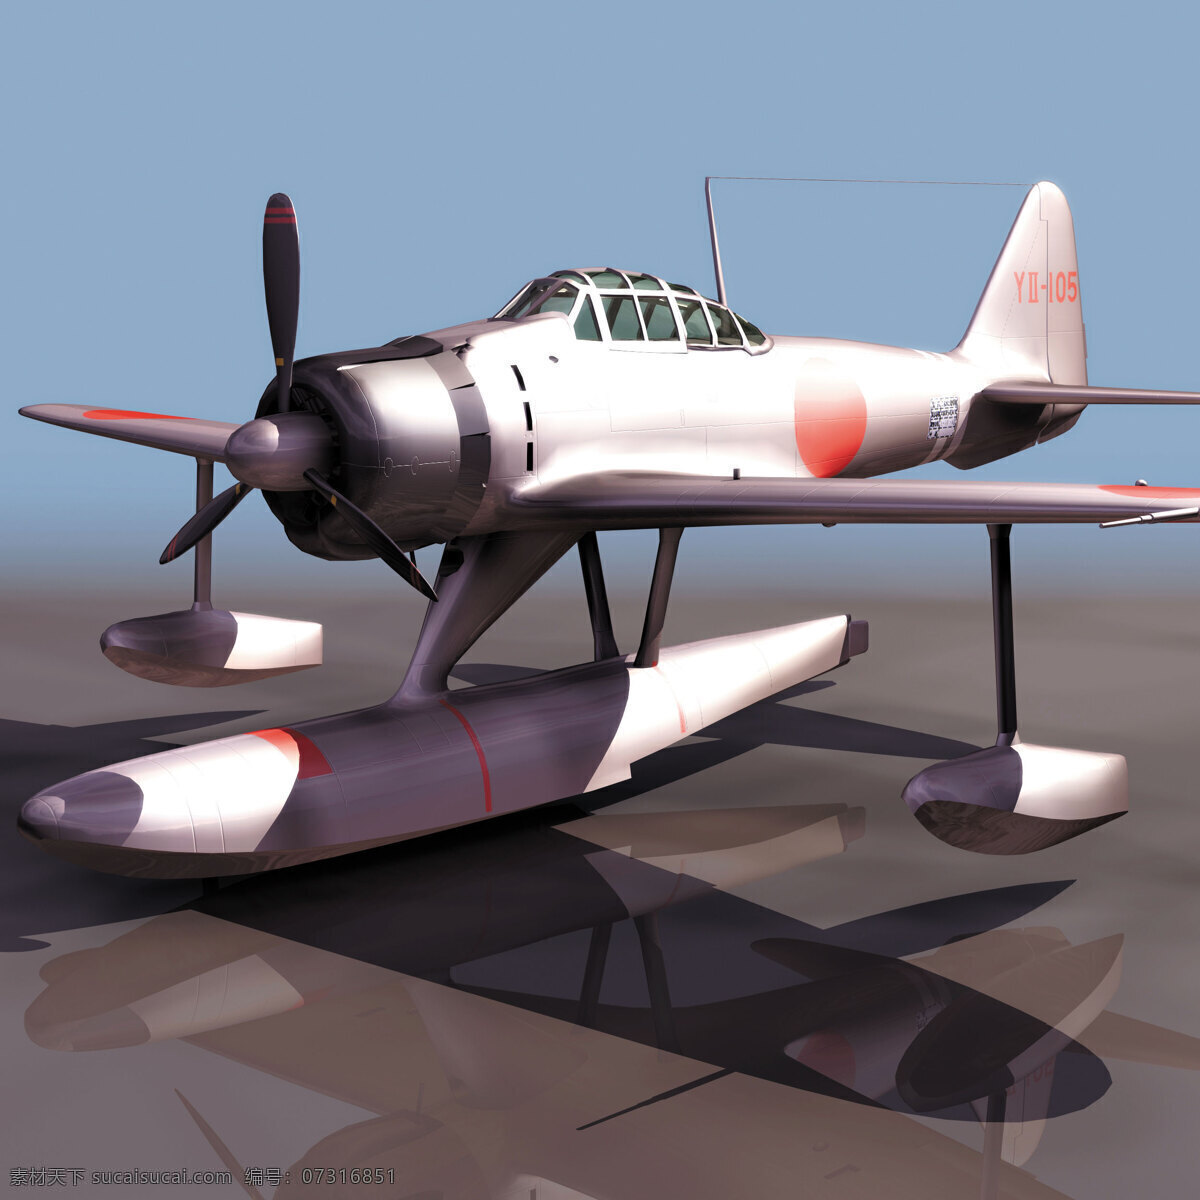 飞机免费下载 3d设计模型 max 飞机 飞机模型 飞行 建模 源文件 3ds 其他模型 3d模型素材 其他3d模型